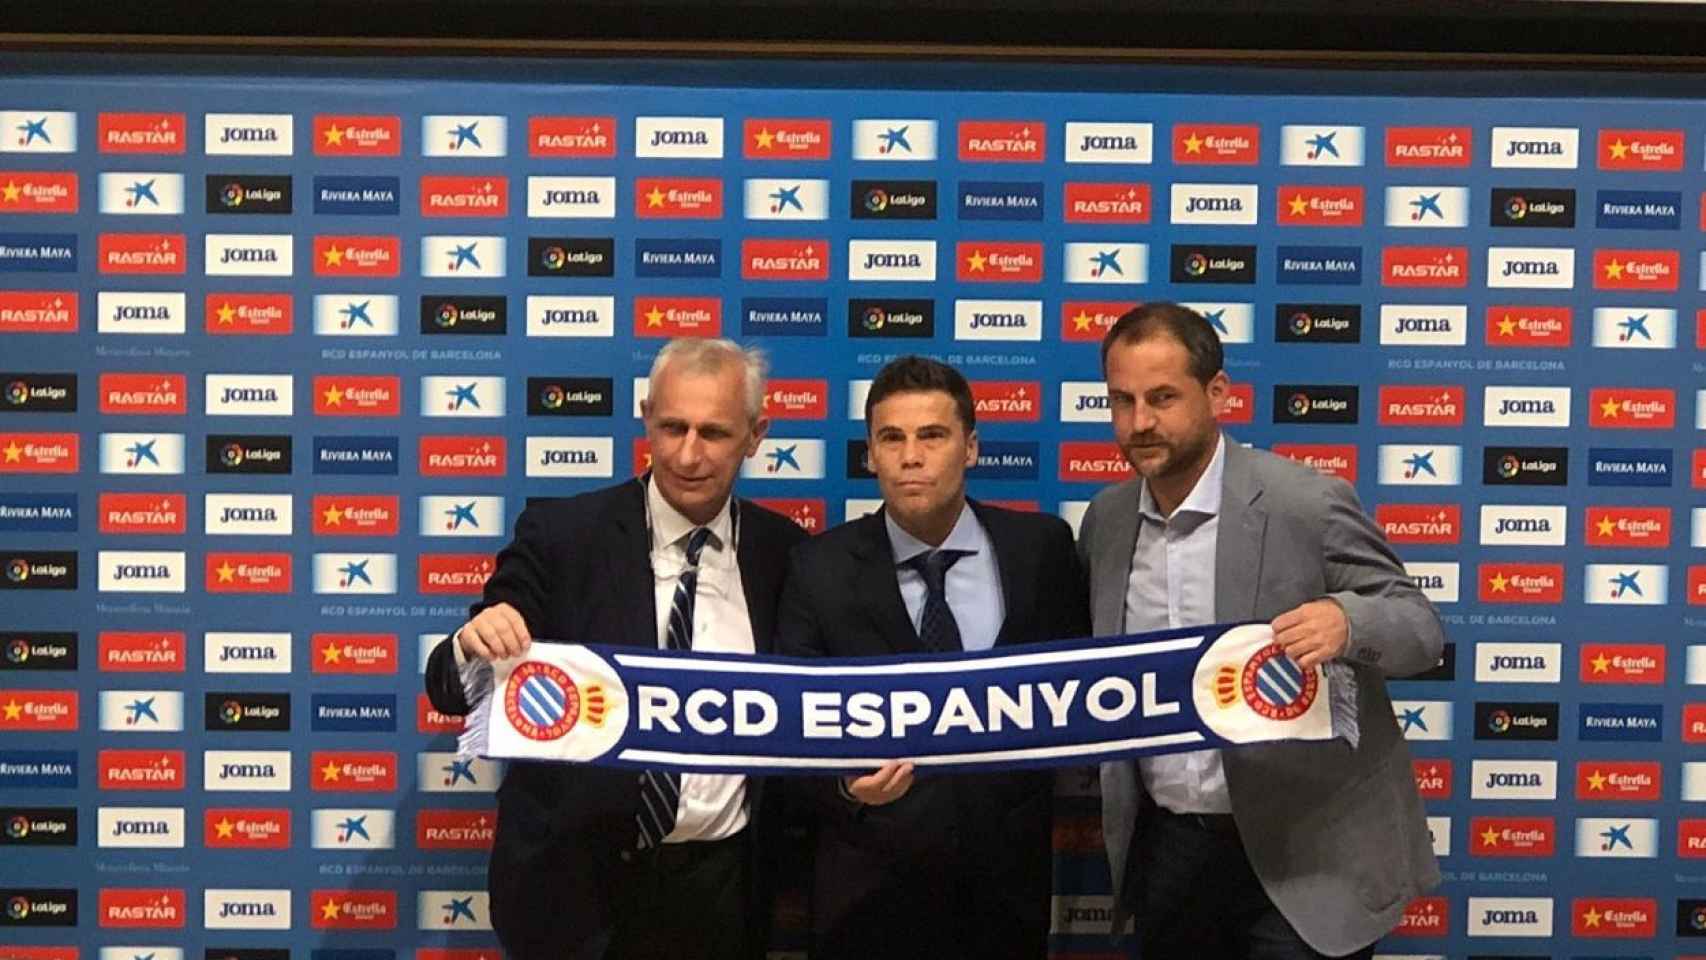 El Espanyol ha puesto en Rubi la esperanza de una buena temporada. Este lunes se estrena con su nuevo equipo / Archivo